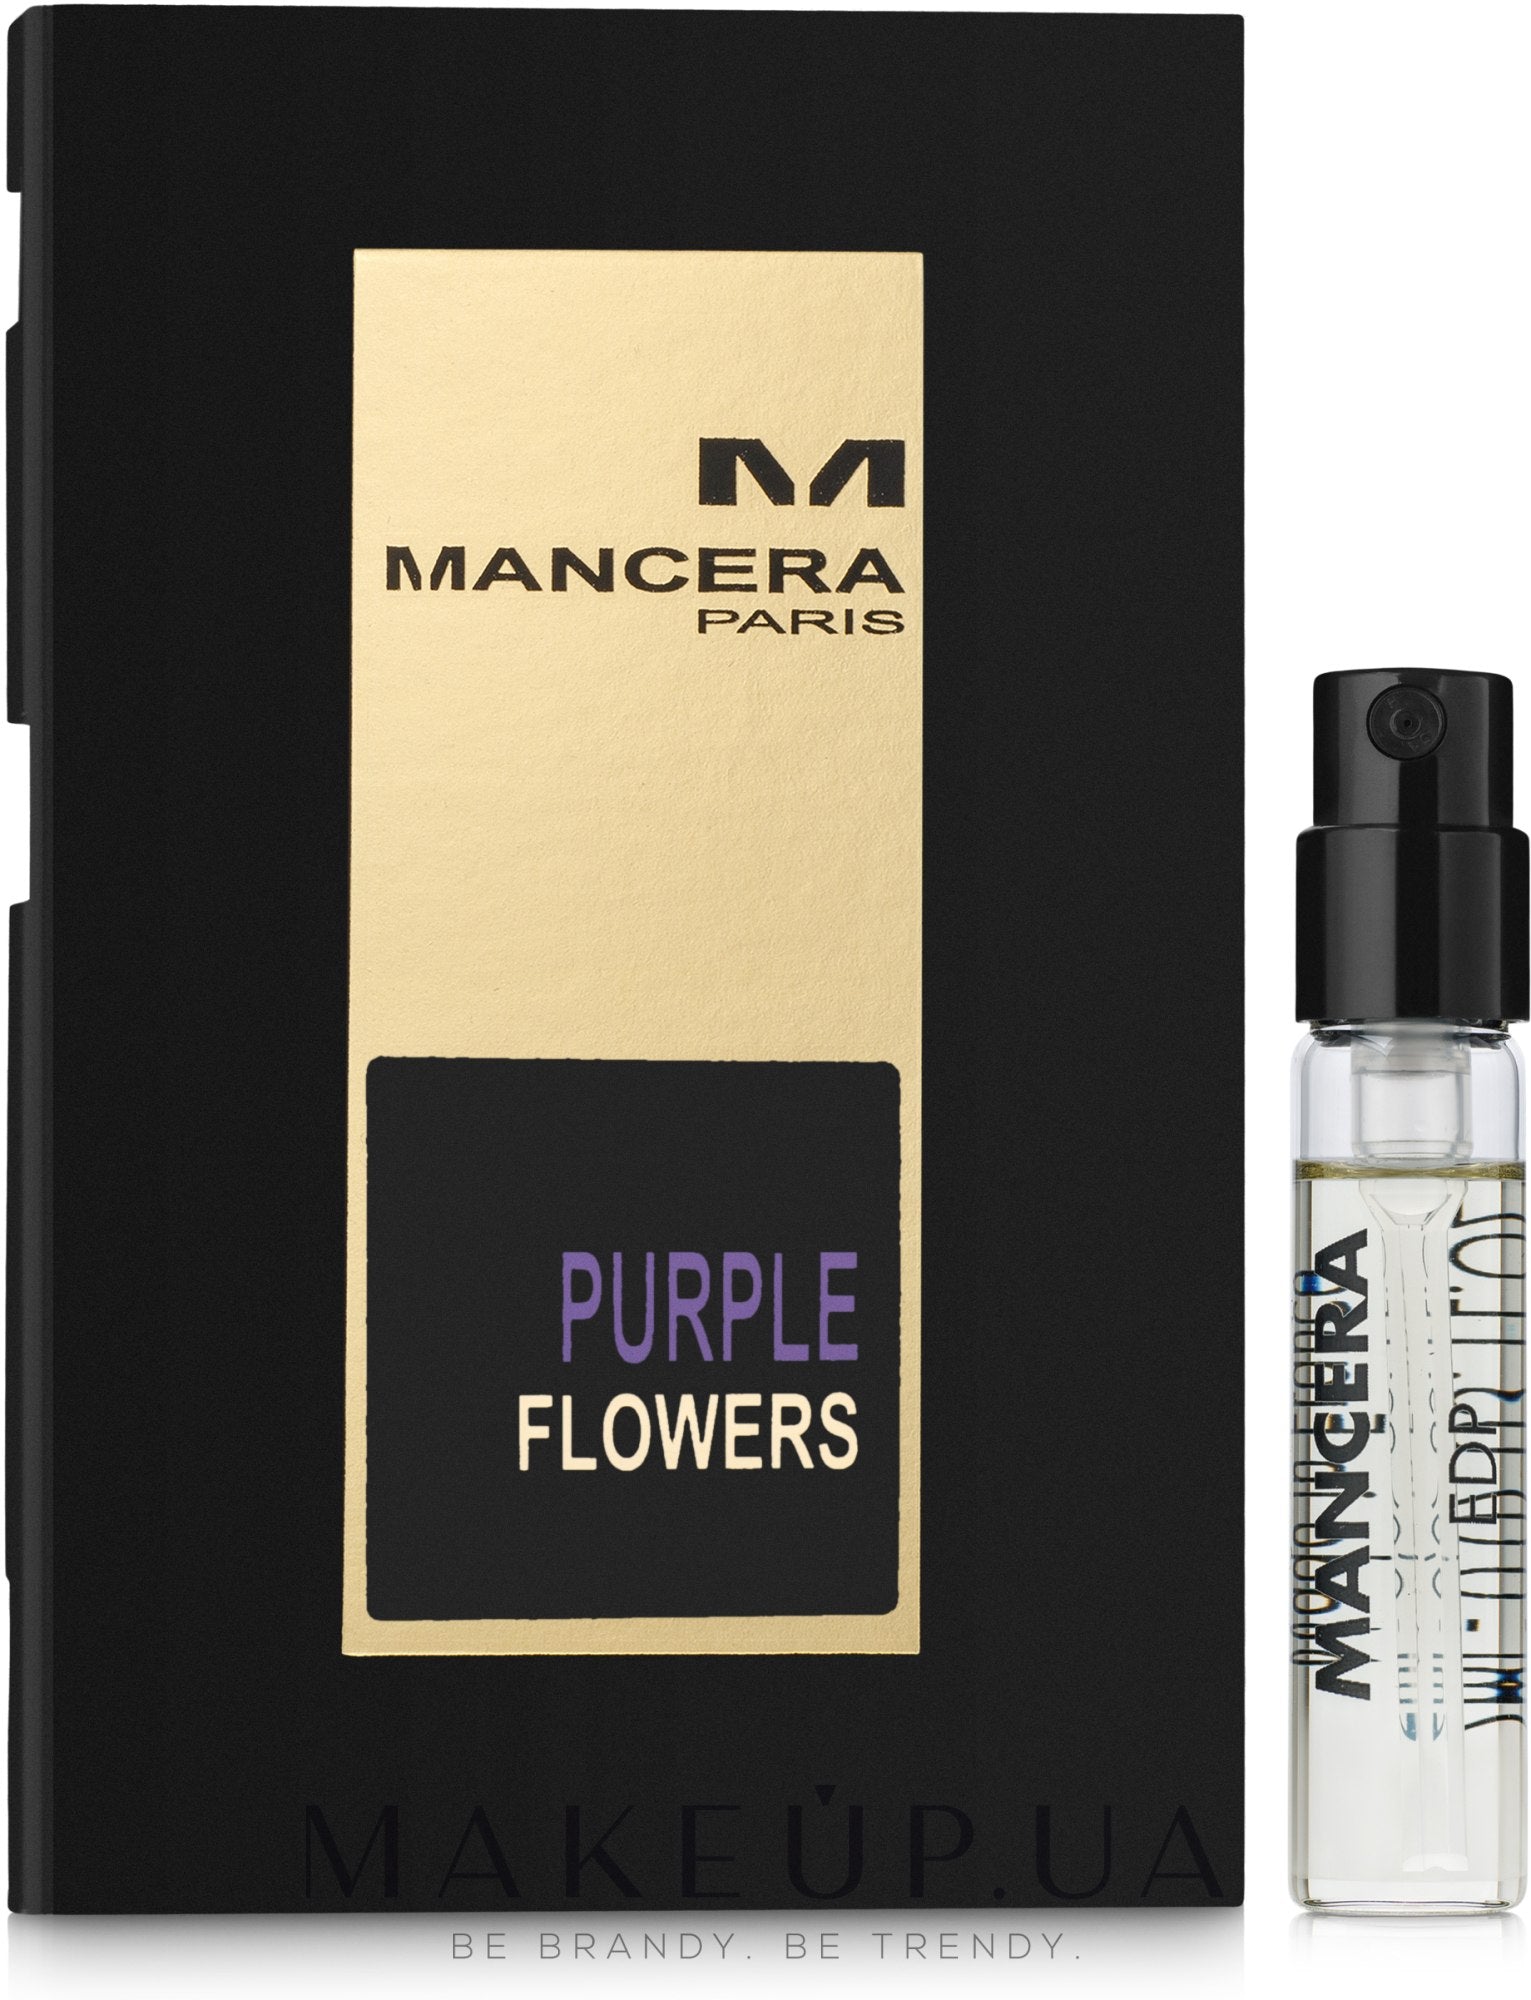 Mancera Purple Flowers échantillon officiel 2ml 0.07 fl.oz